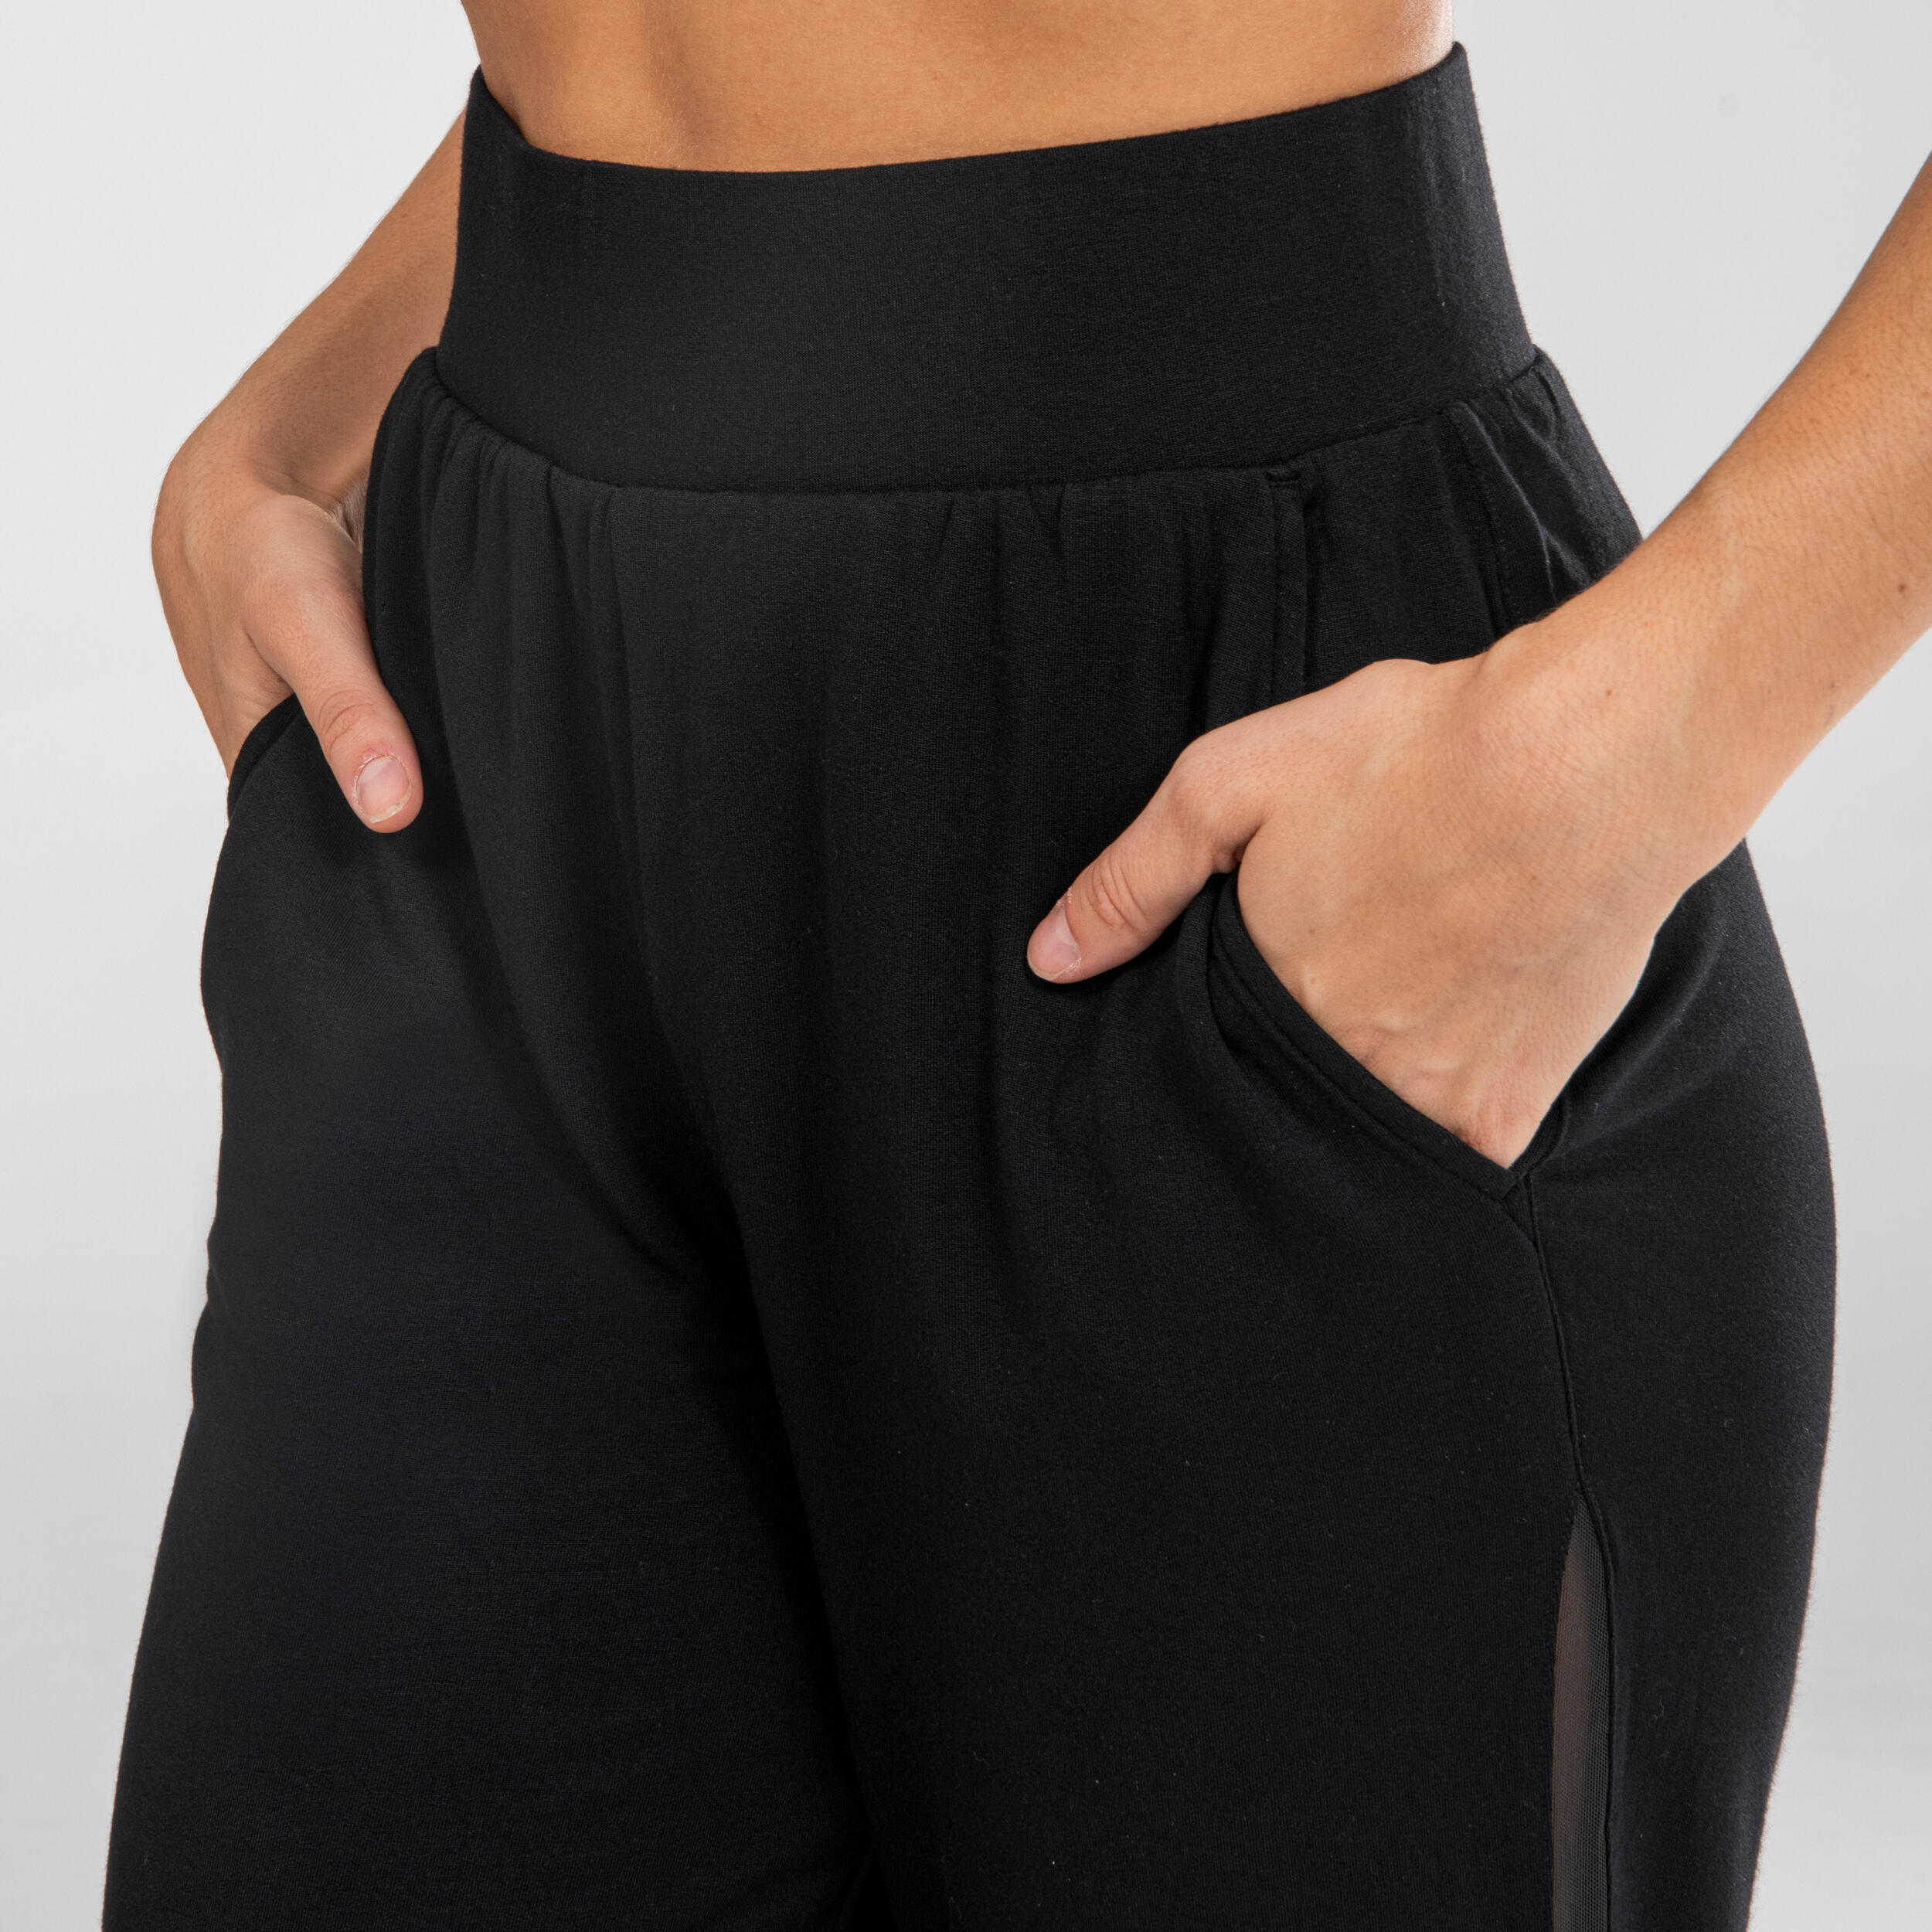 Women's Loose Modern Dance Pants - Black - Black - Starever - Decathlon